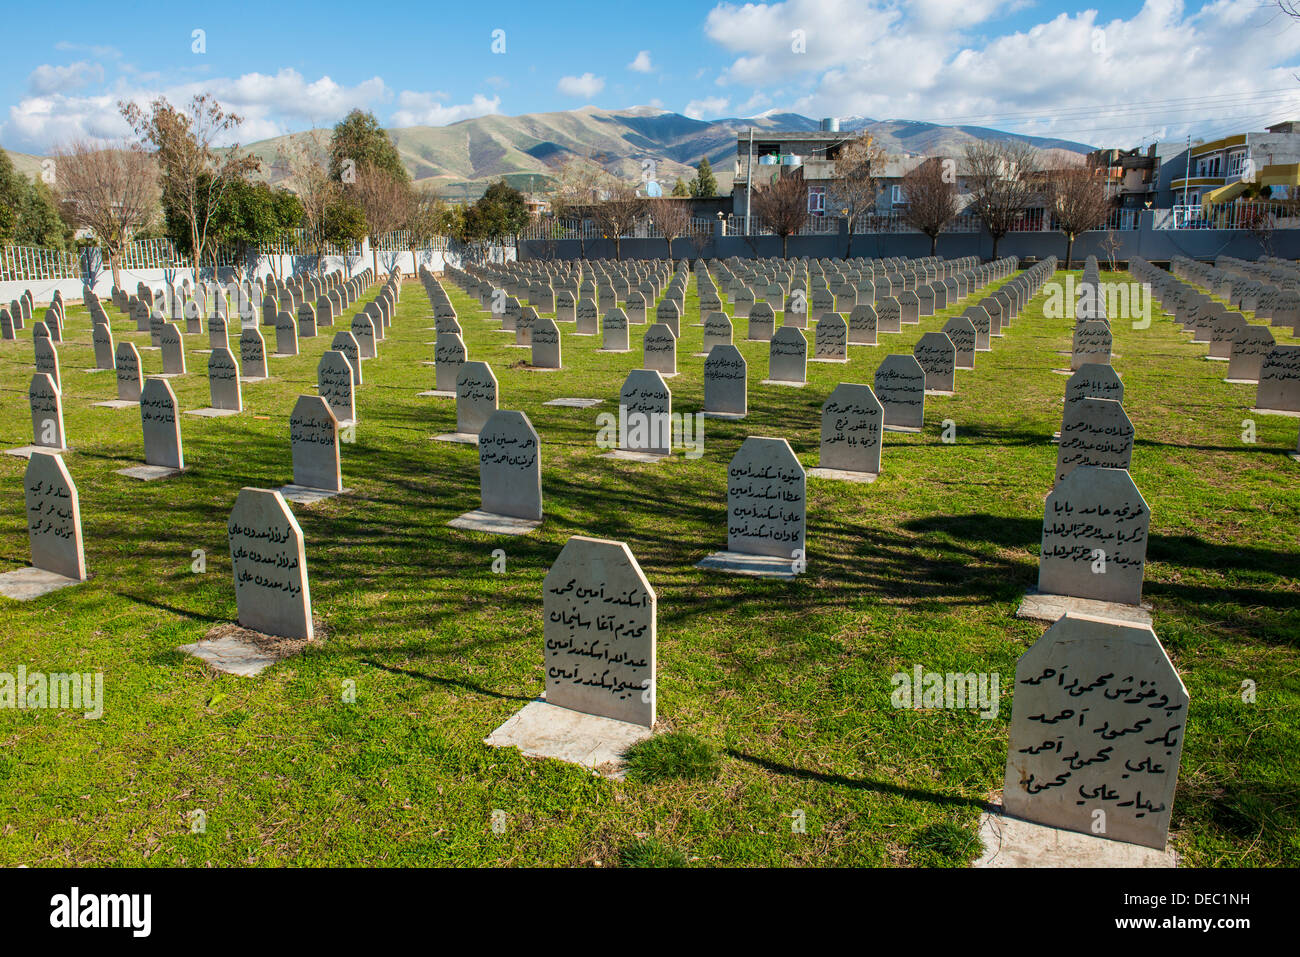 Graves on Halabja cemetery, Halabja, Iraqi Kurdistan, Iraq Stock Photo